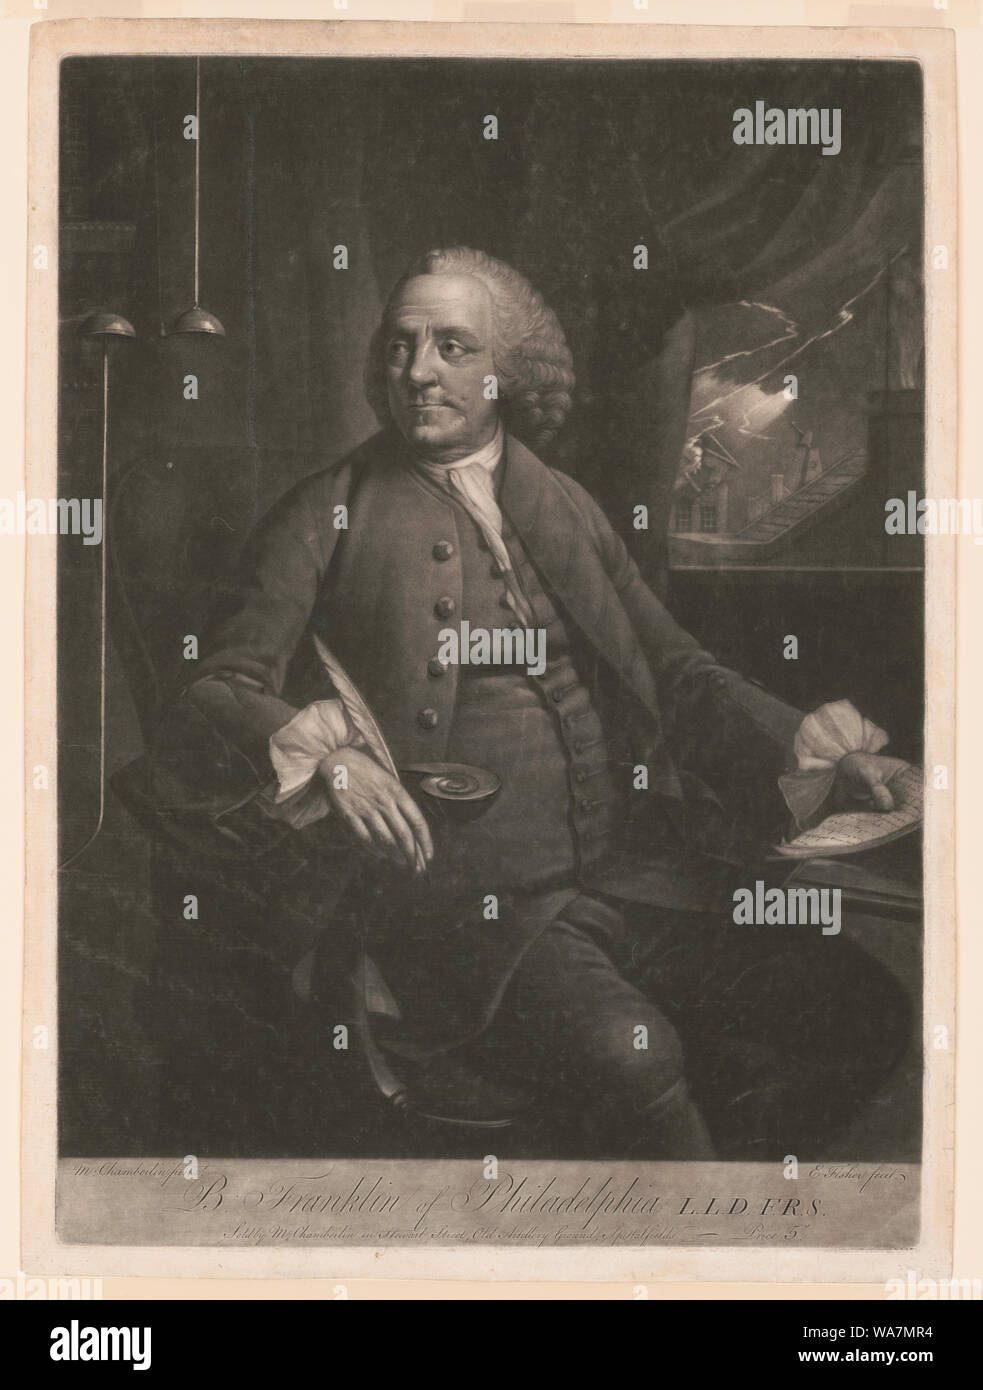 B. Franklin of Philadelphia L.L.D. F.R.S. / M. Chamberlin pinxt. ; E. Fisher fecit. Stock Photo